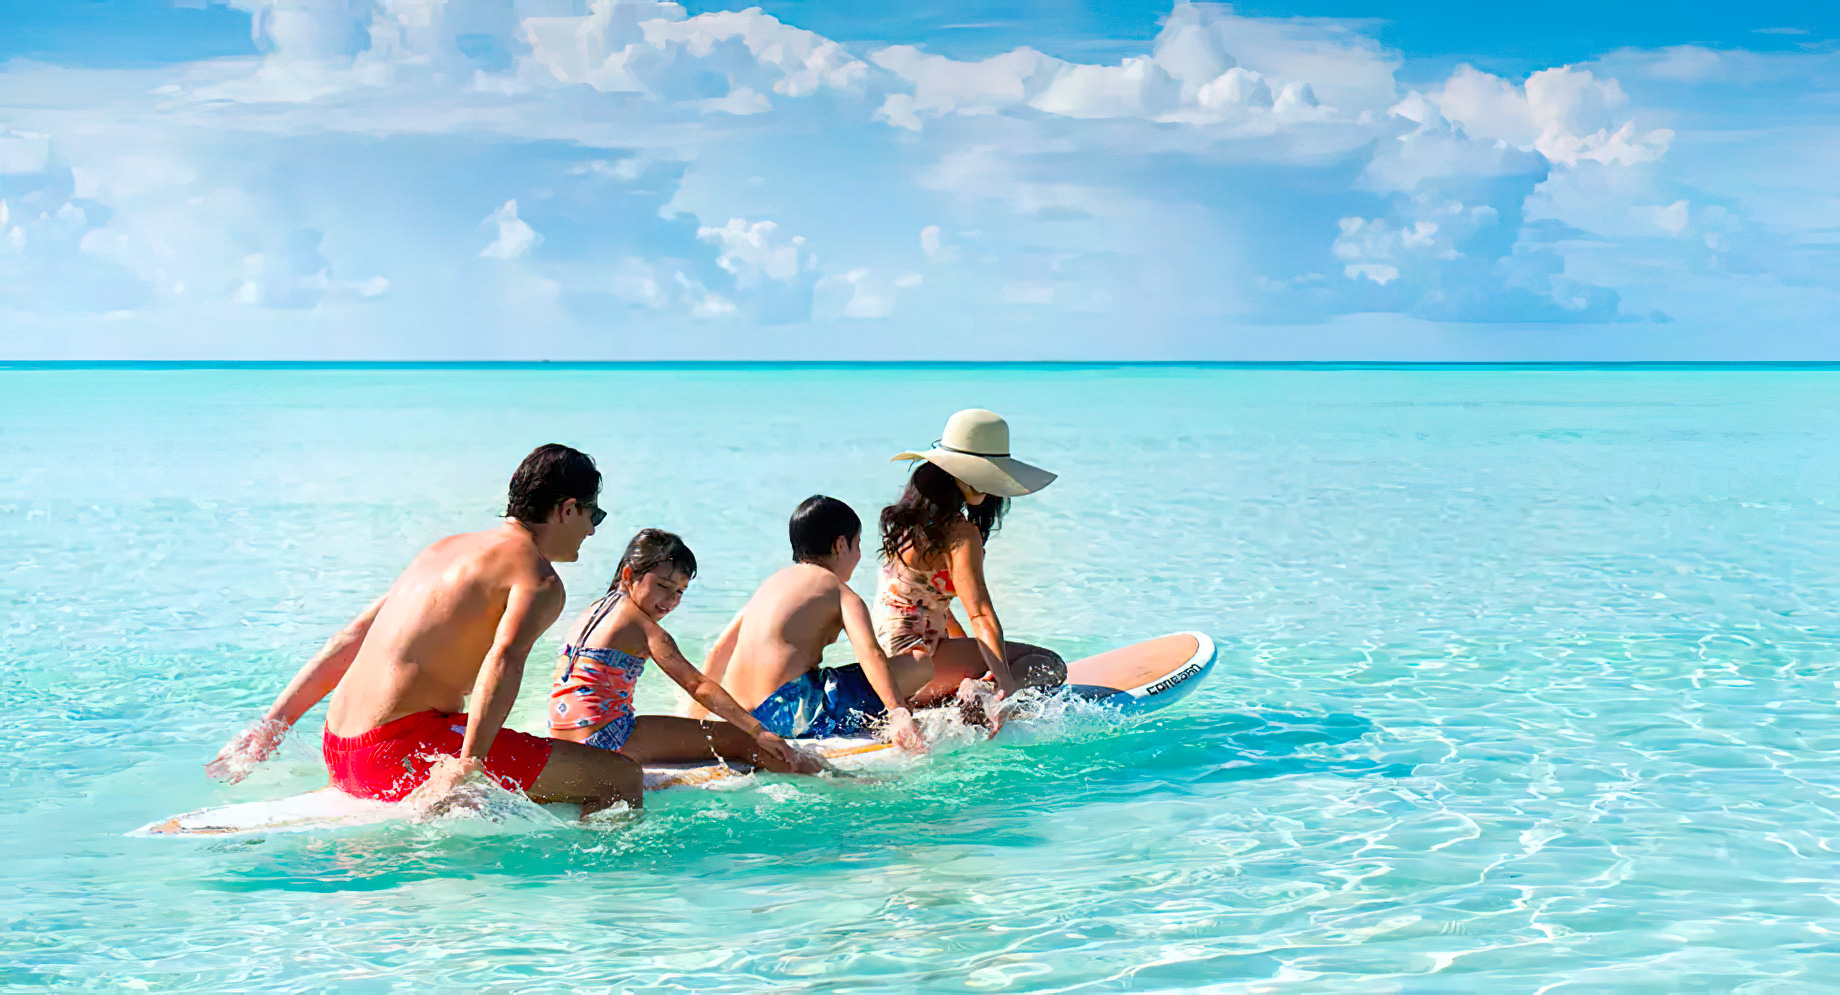 Anantara Thigu Maldives Resort - South Male Atoll, Maldives - Boarding